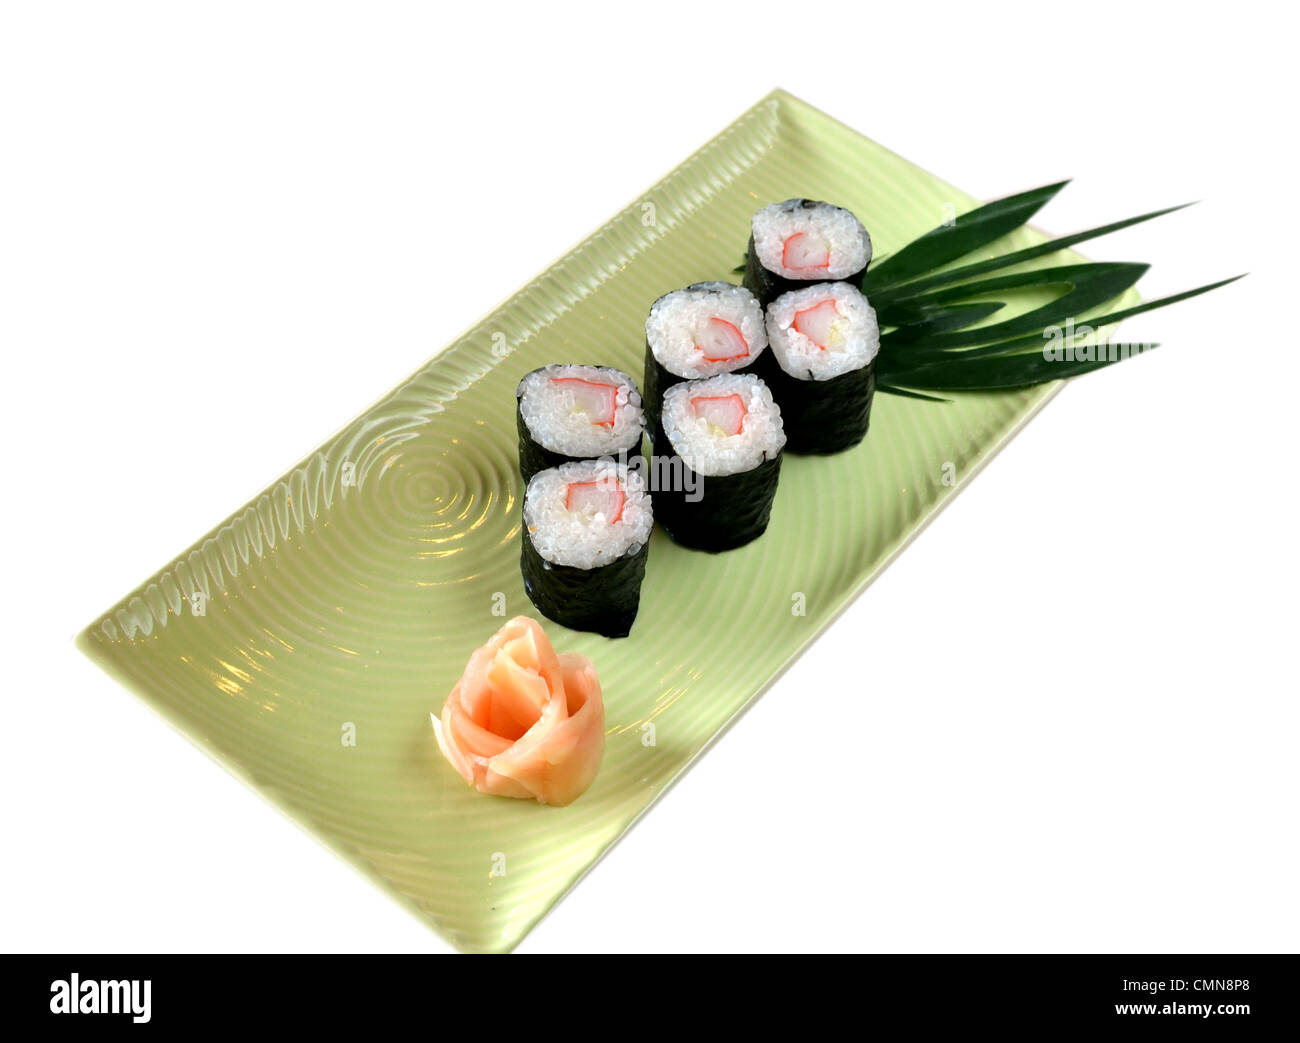 La cucina giapponese - Sushi Roll con alghe marine Foto Stock